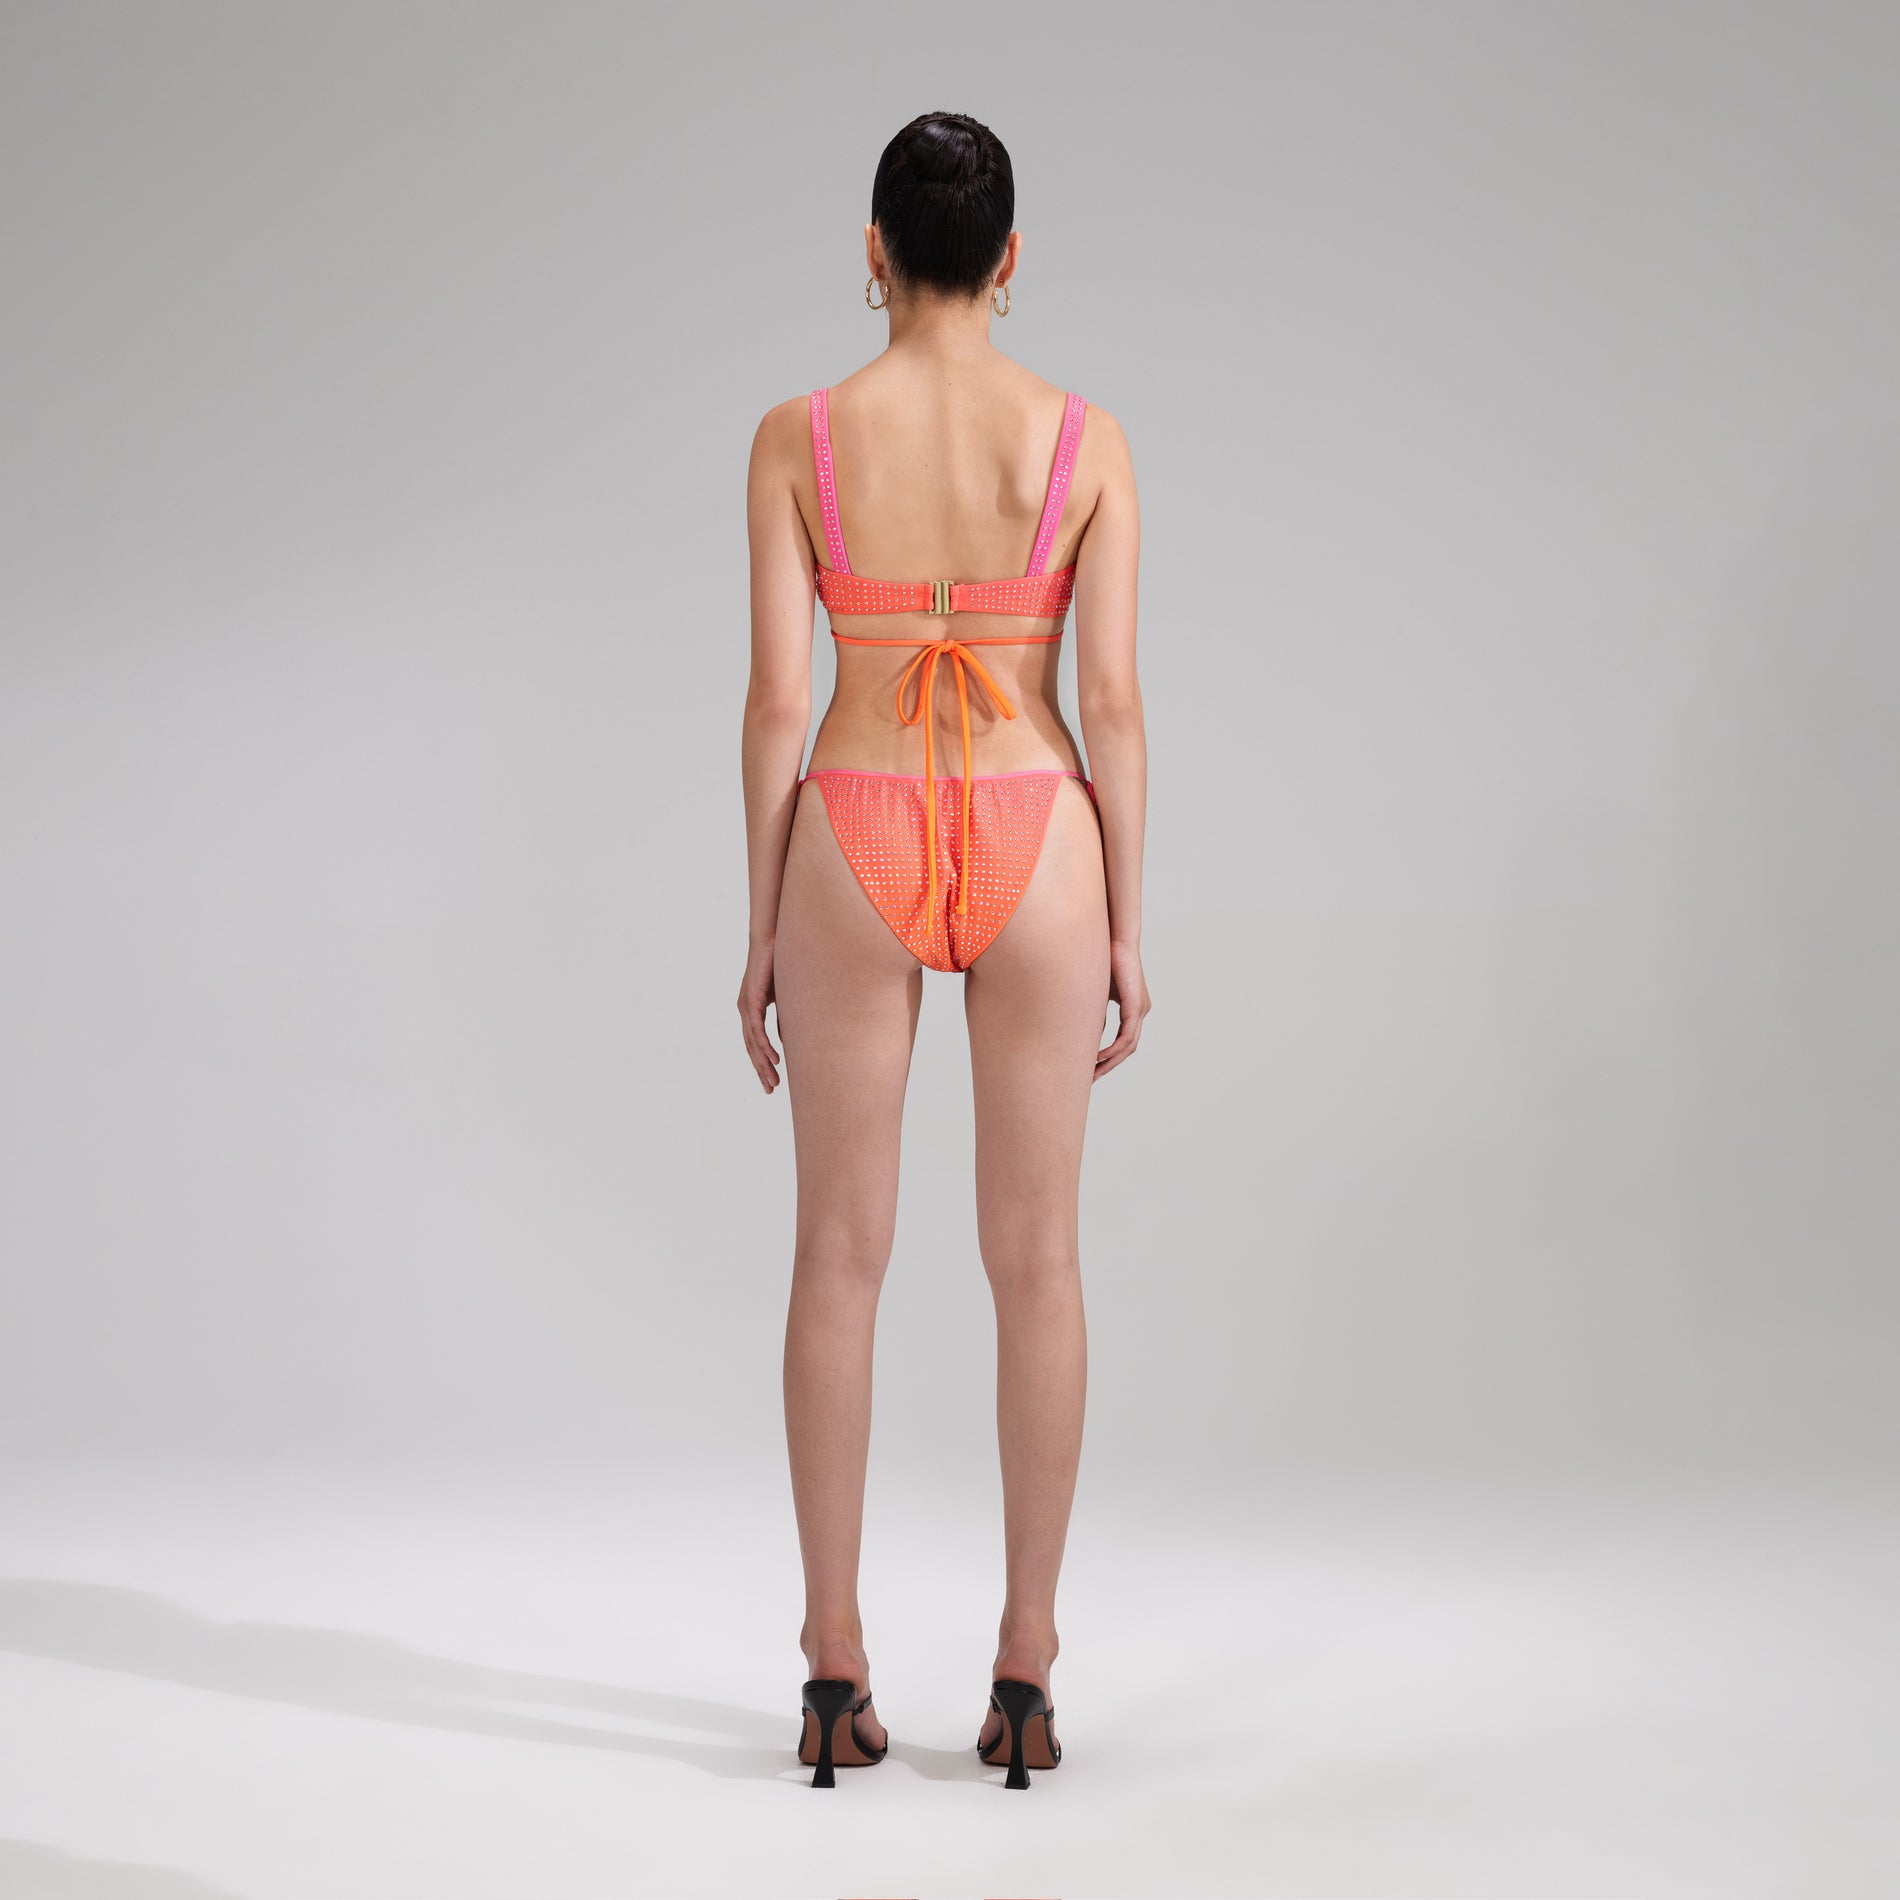 A woman wearing the Orange Rhinestone Tie Side Bikini Brief